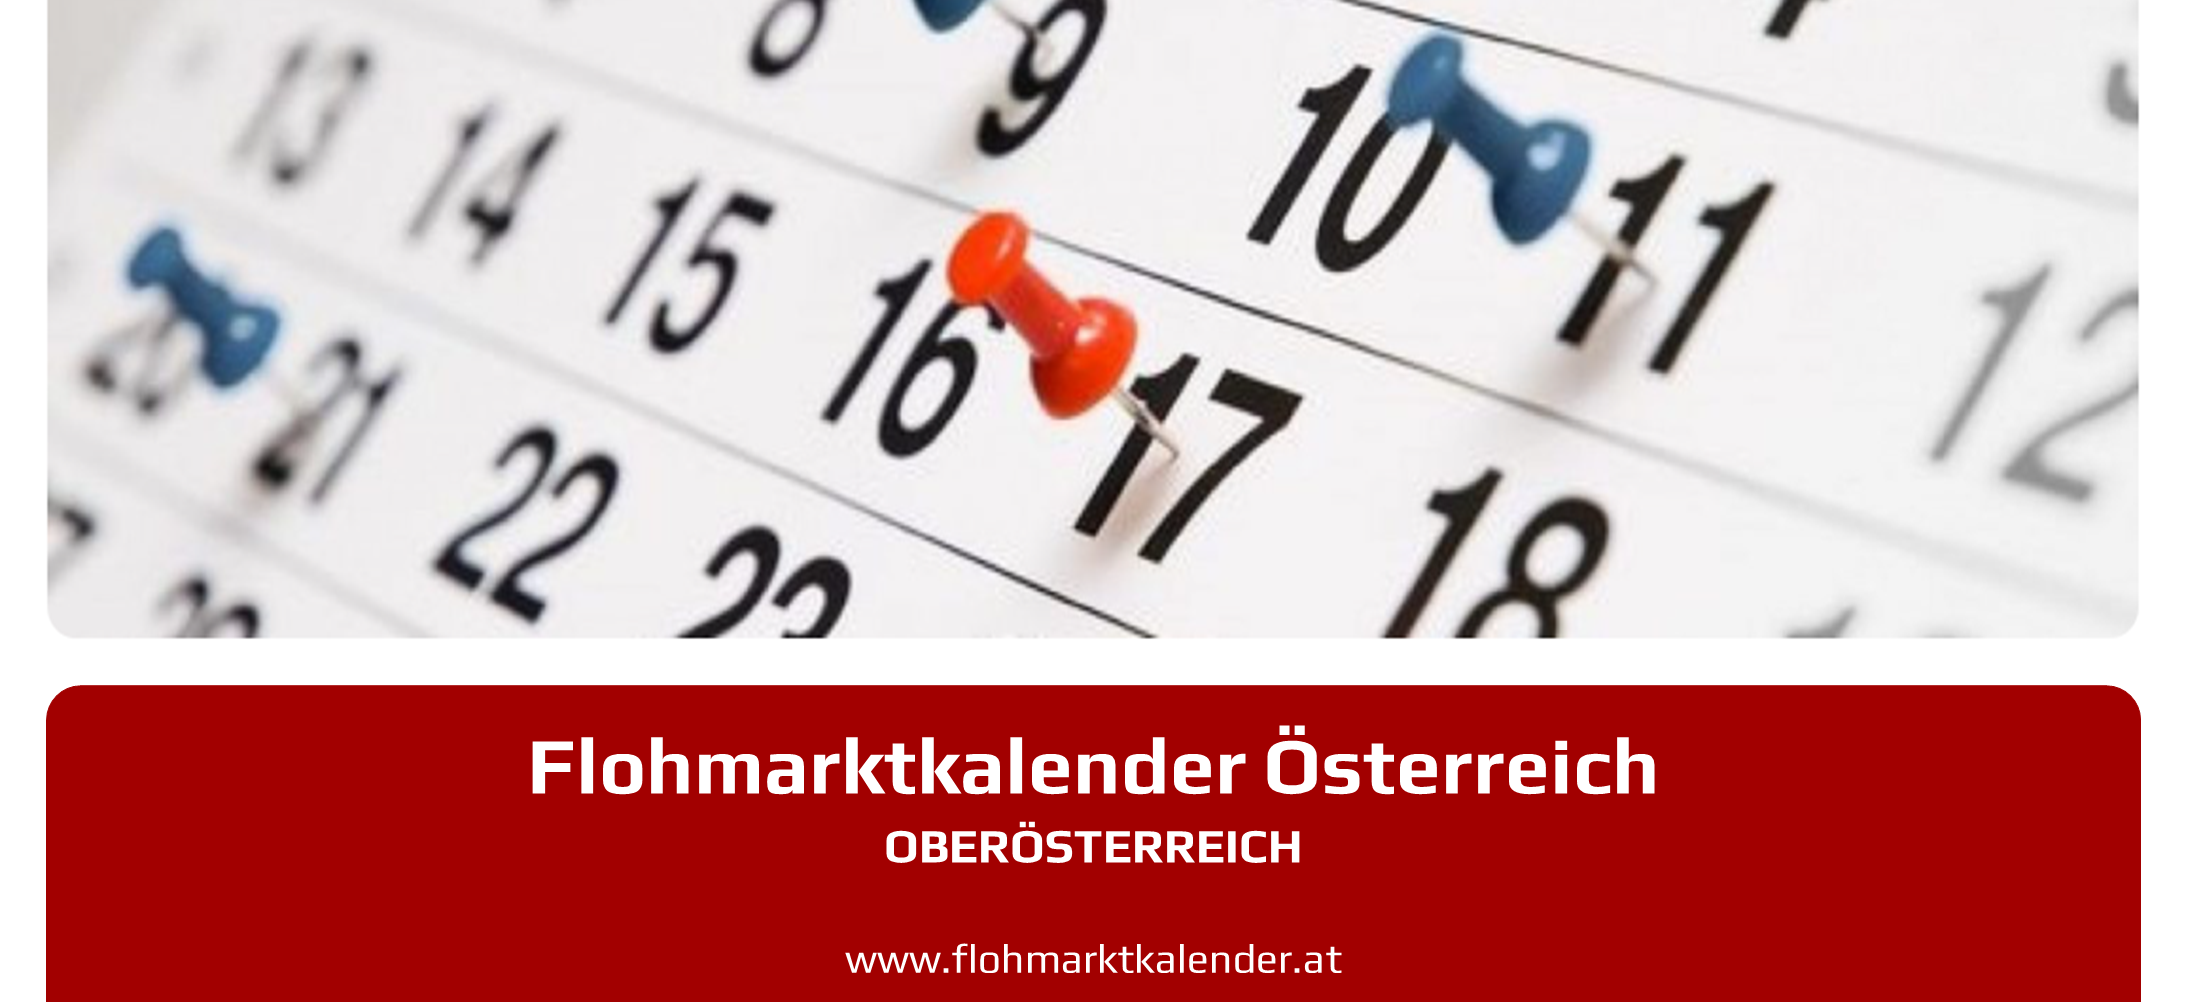 Flohmarktkalender Oberoesterreich 4